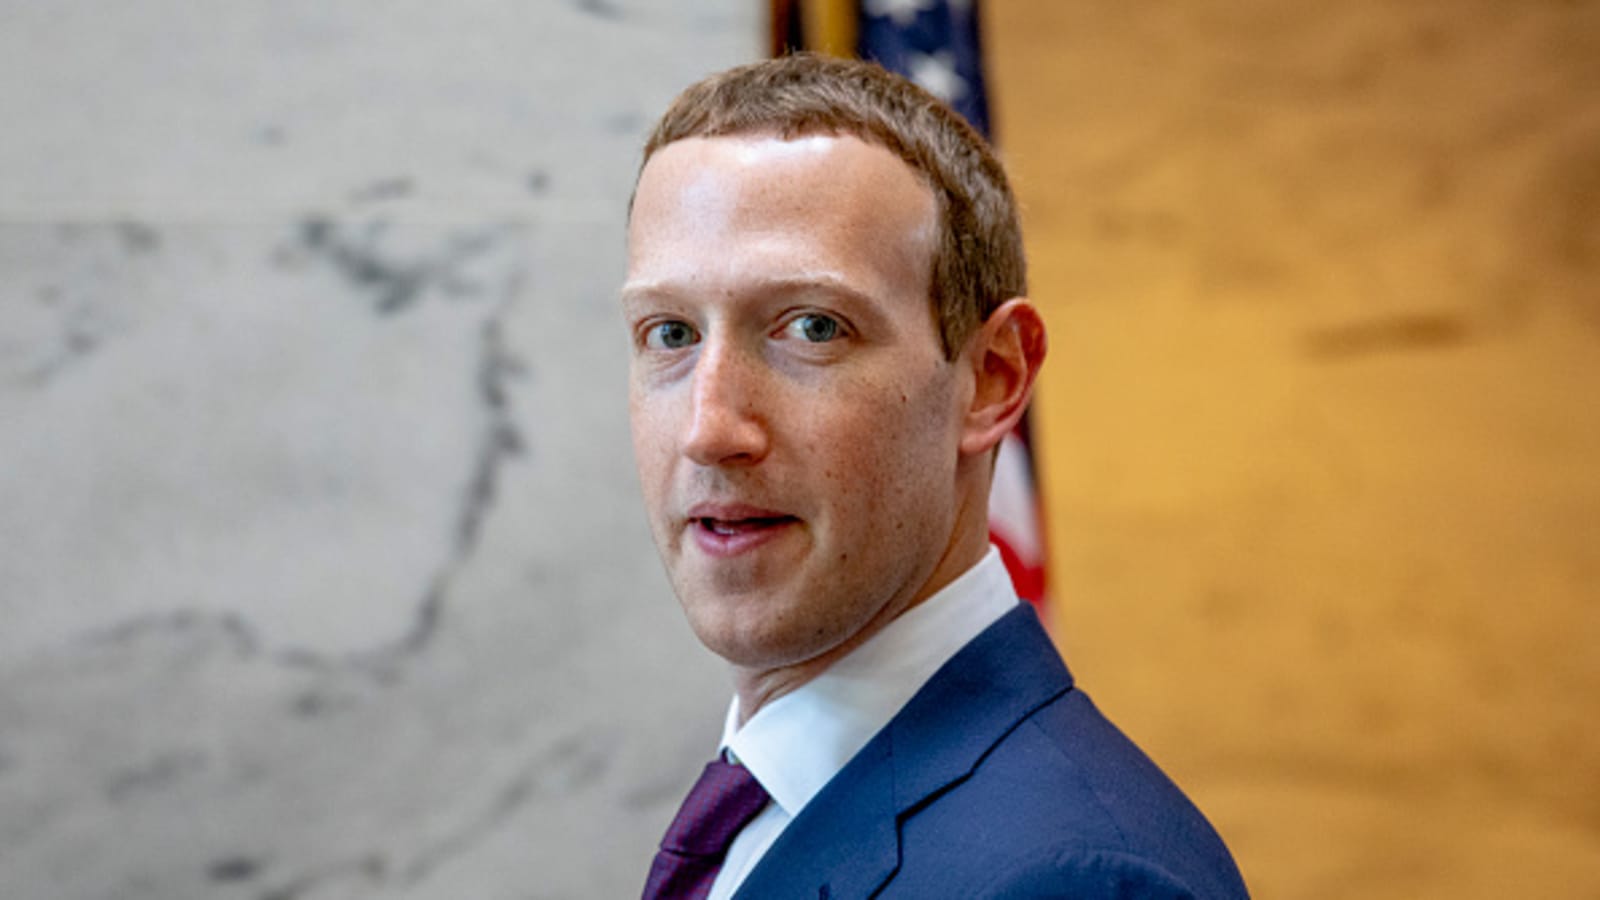 Facebook CEO Mark Zuckerberg live streams employee Q&A